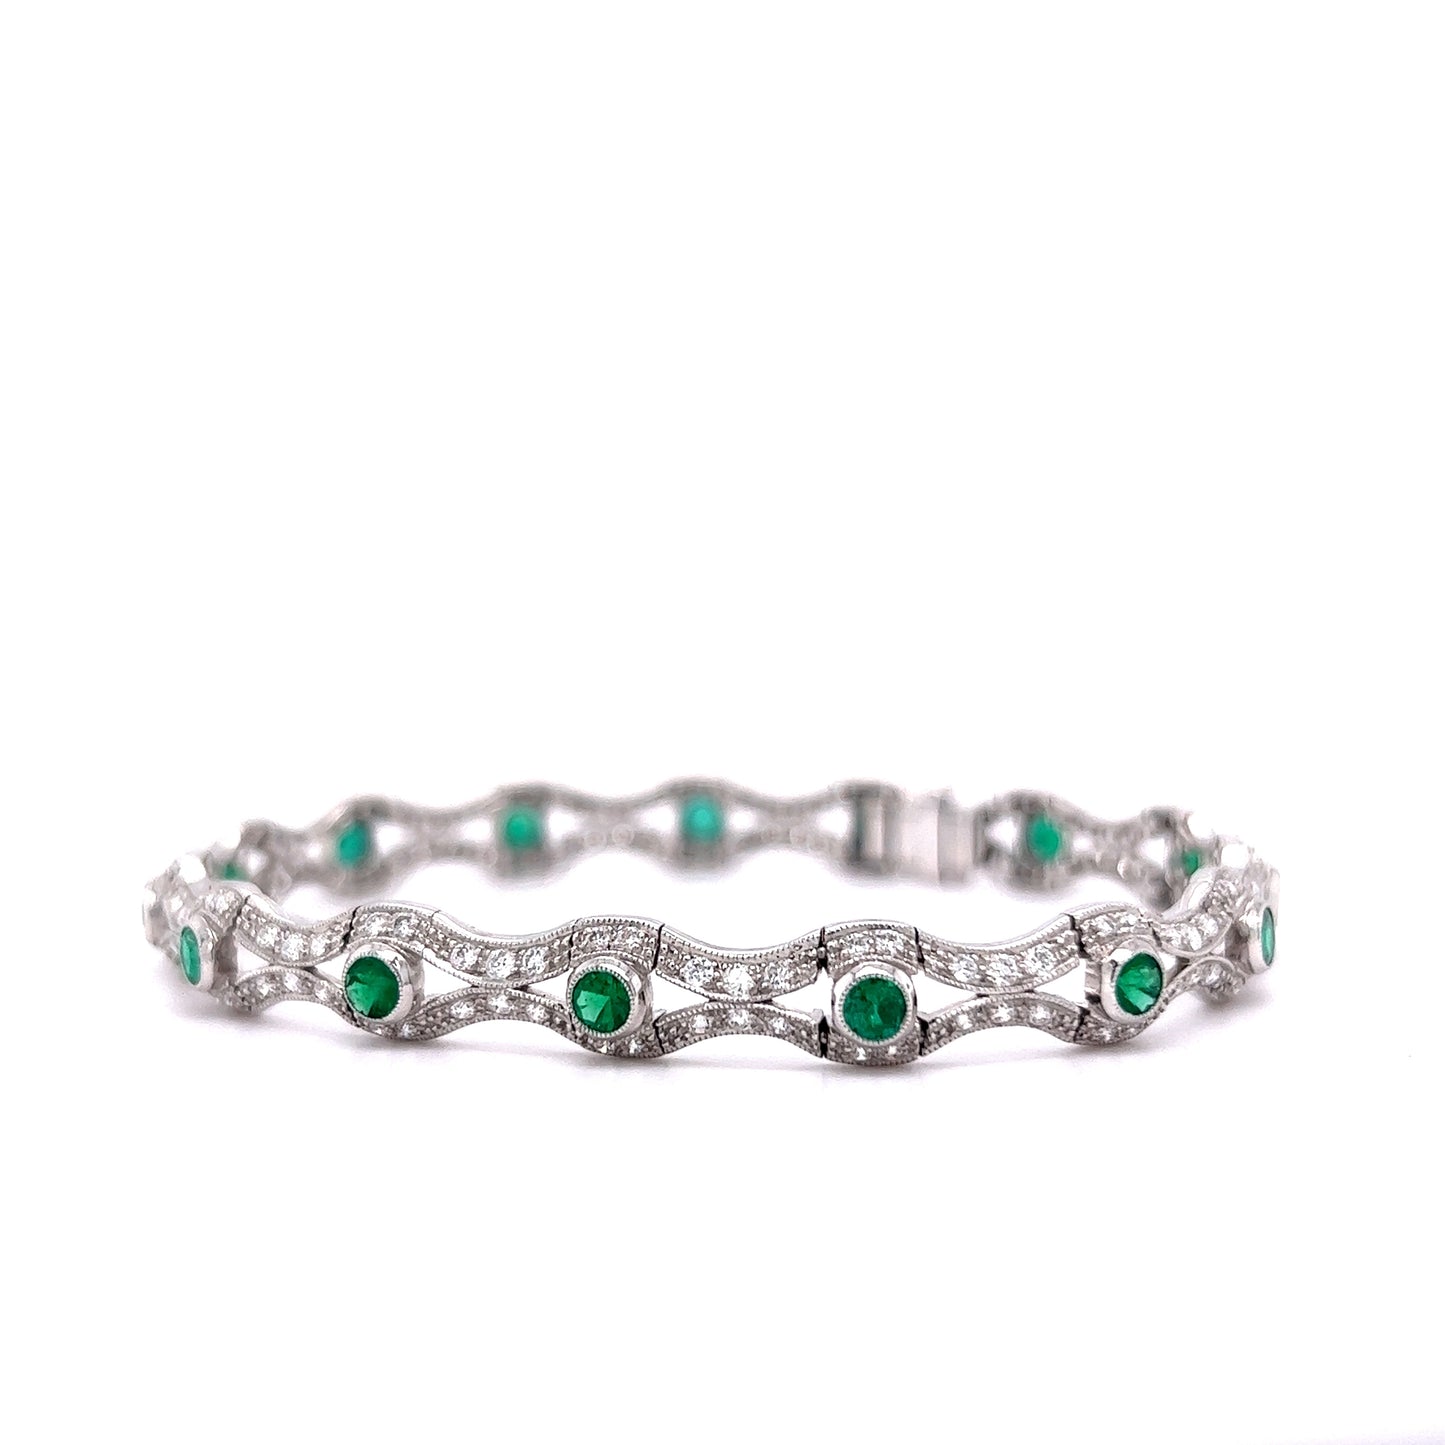 3 Carat Emerald & Diamond Bracelet in 18k White Gold